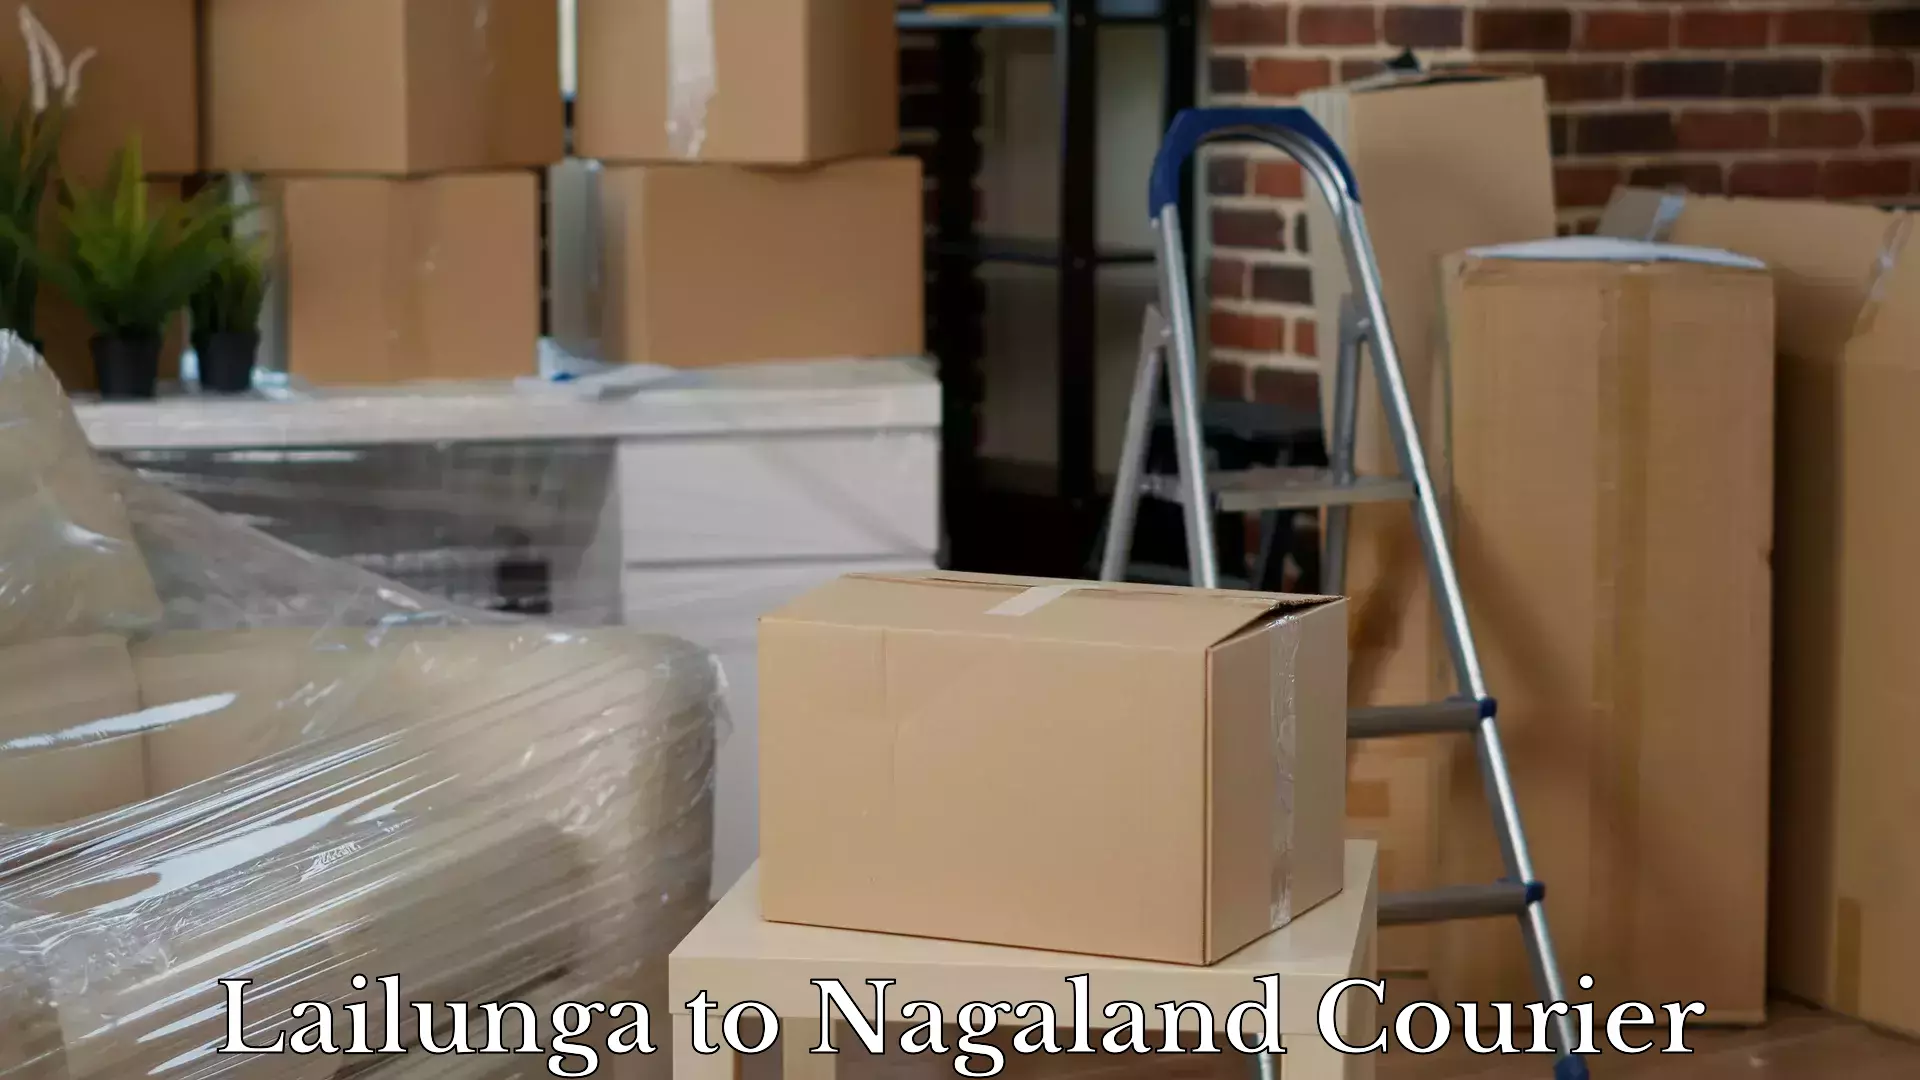 Hassle-free luggage shipping Lailunga to Nagaland